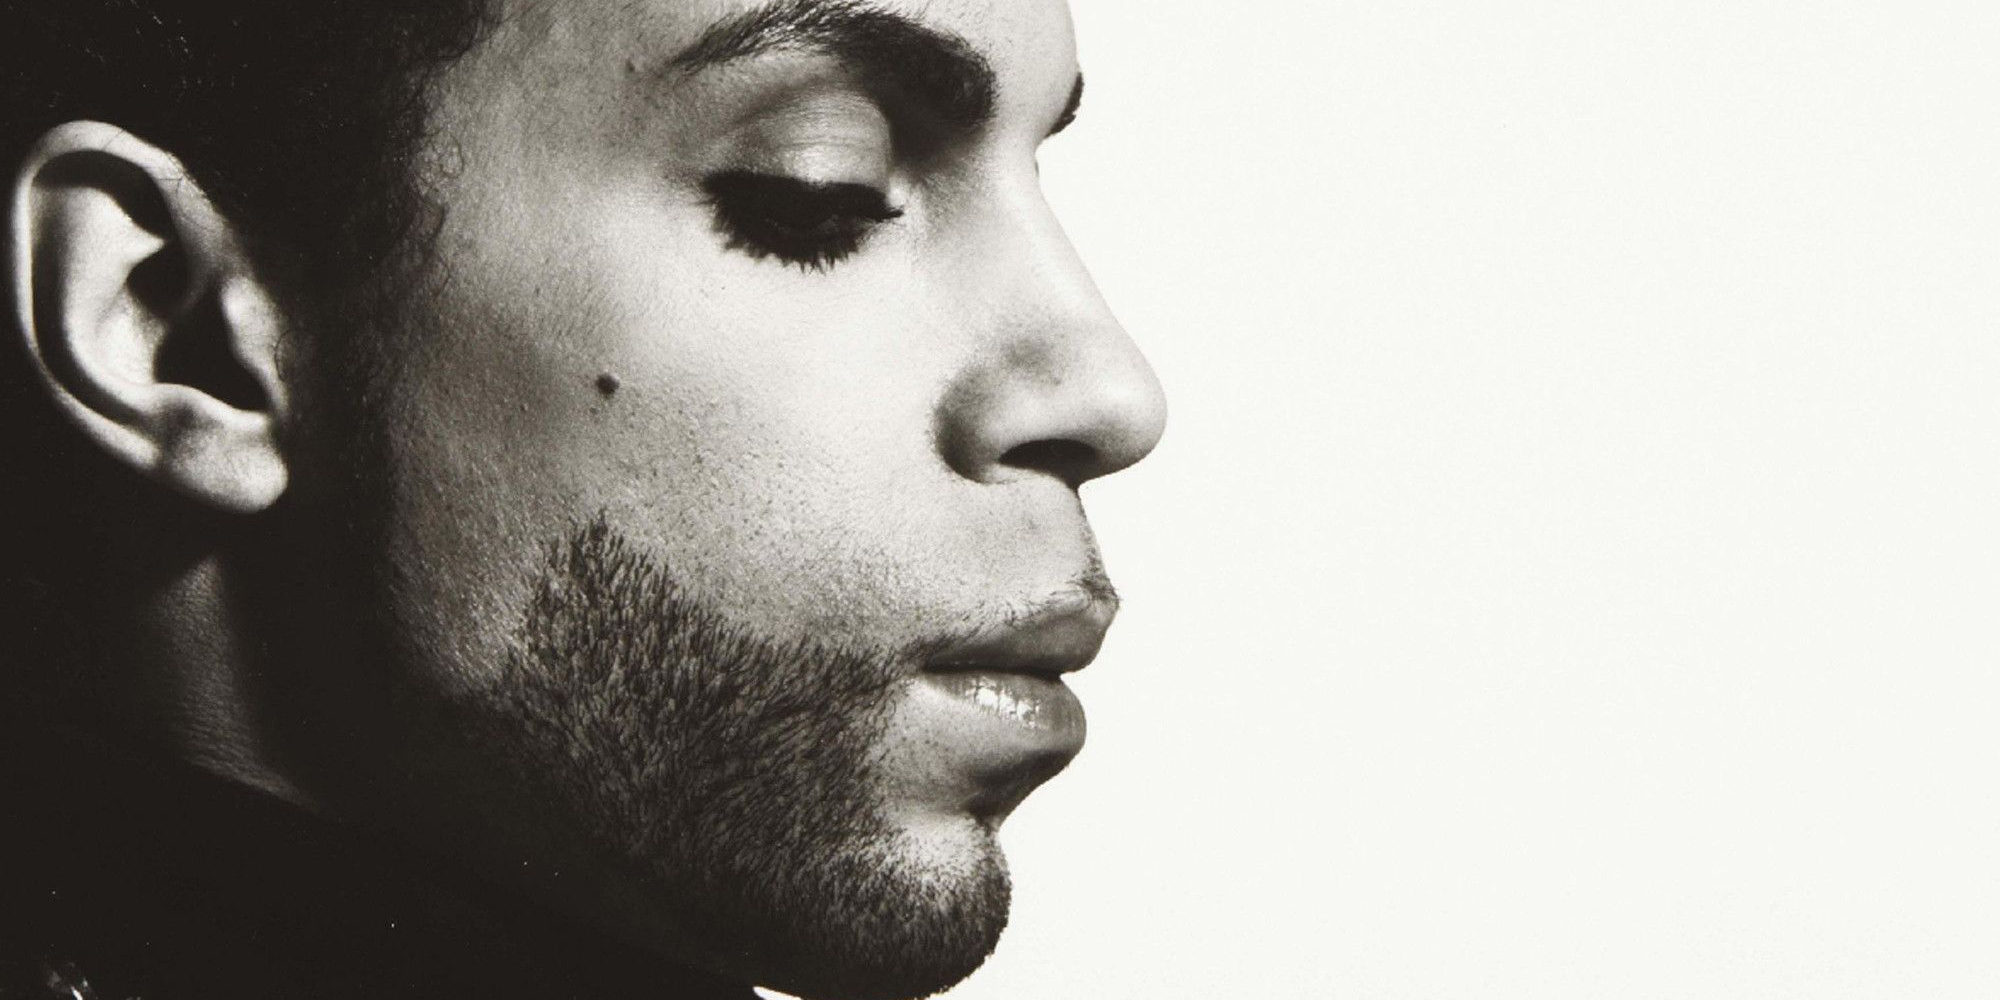 Un año sin Prince: 12 curiosidades que quizás no conoces sobre su legado